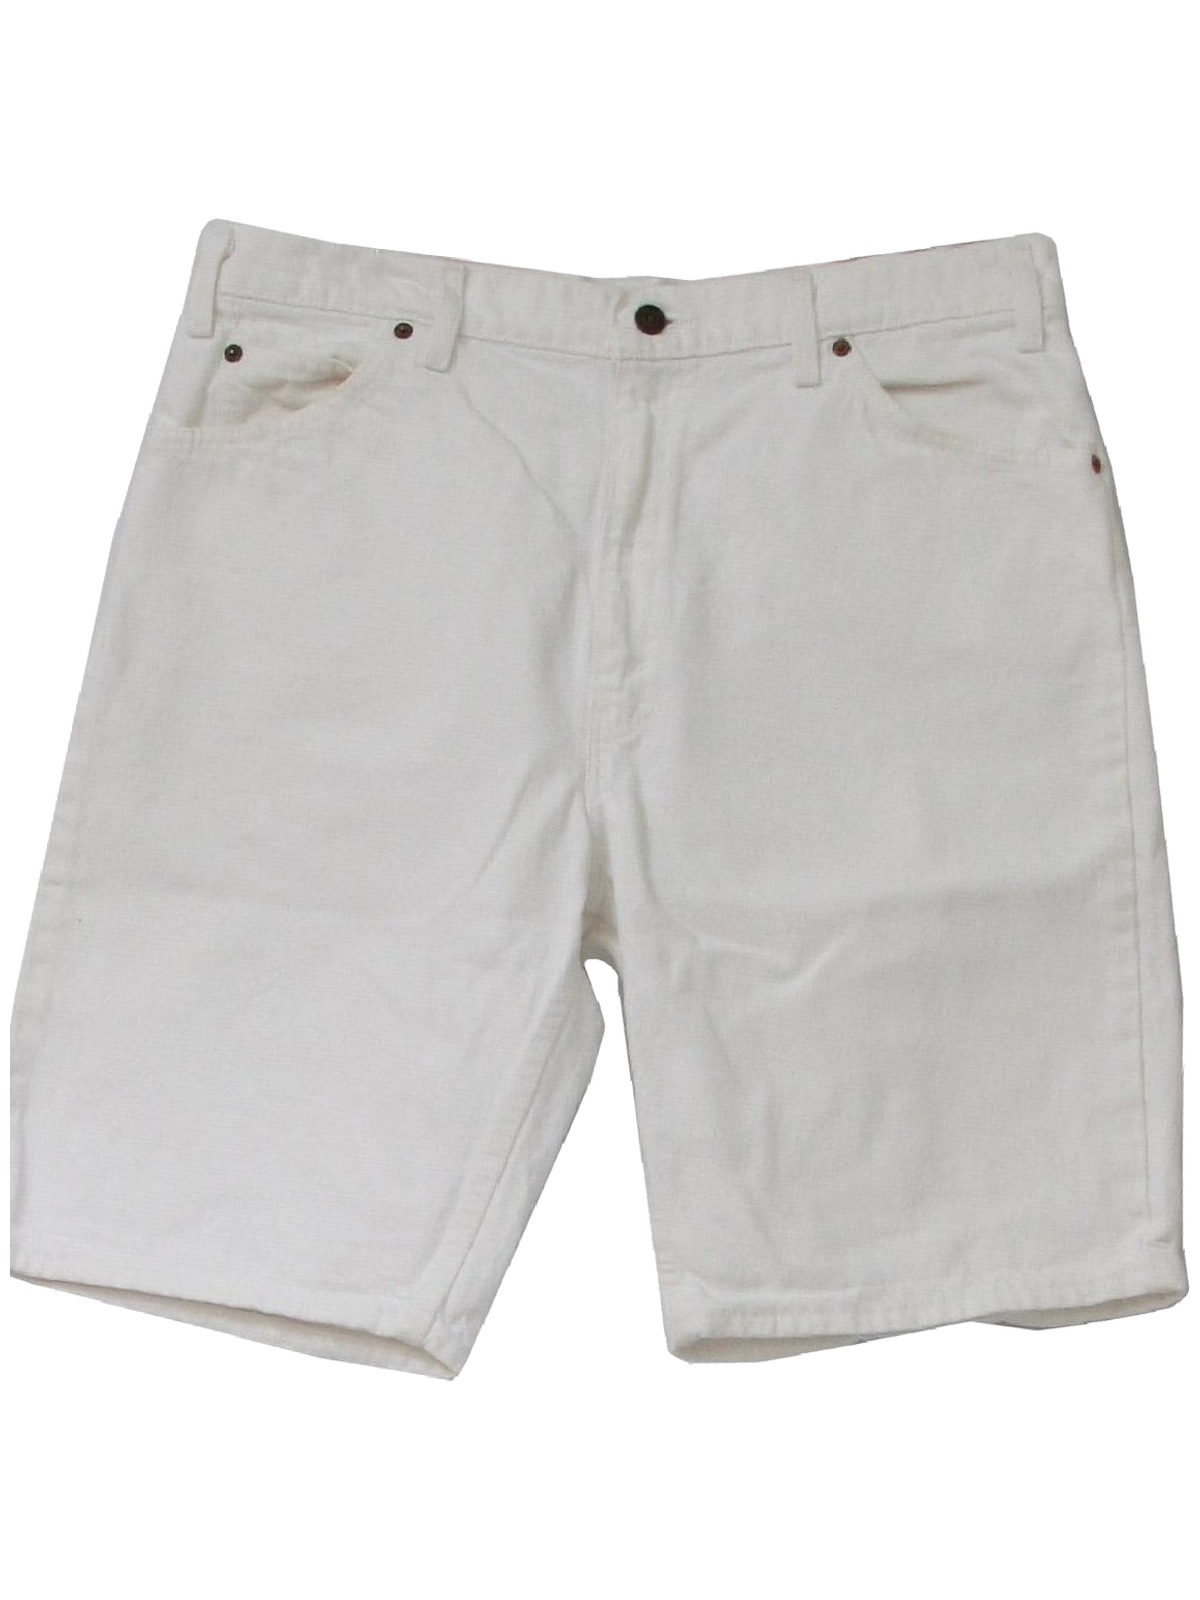 Levis 1990s Vintage Shorts: 90s -Levis- Mens cristp white cotton denim ...